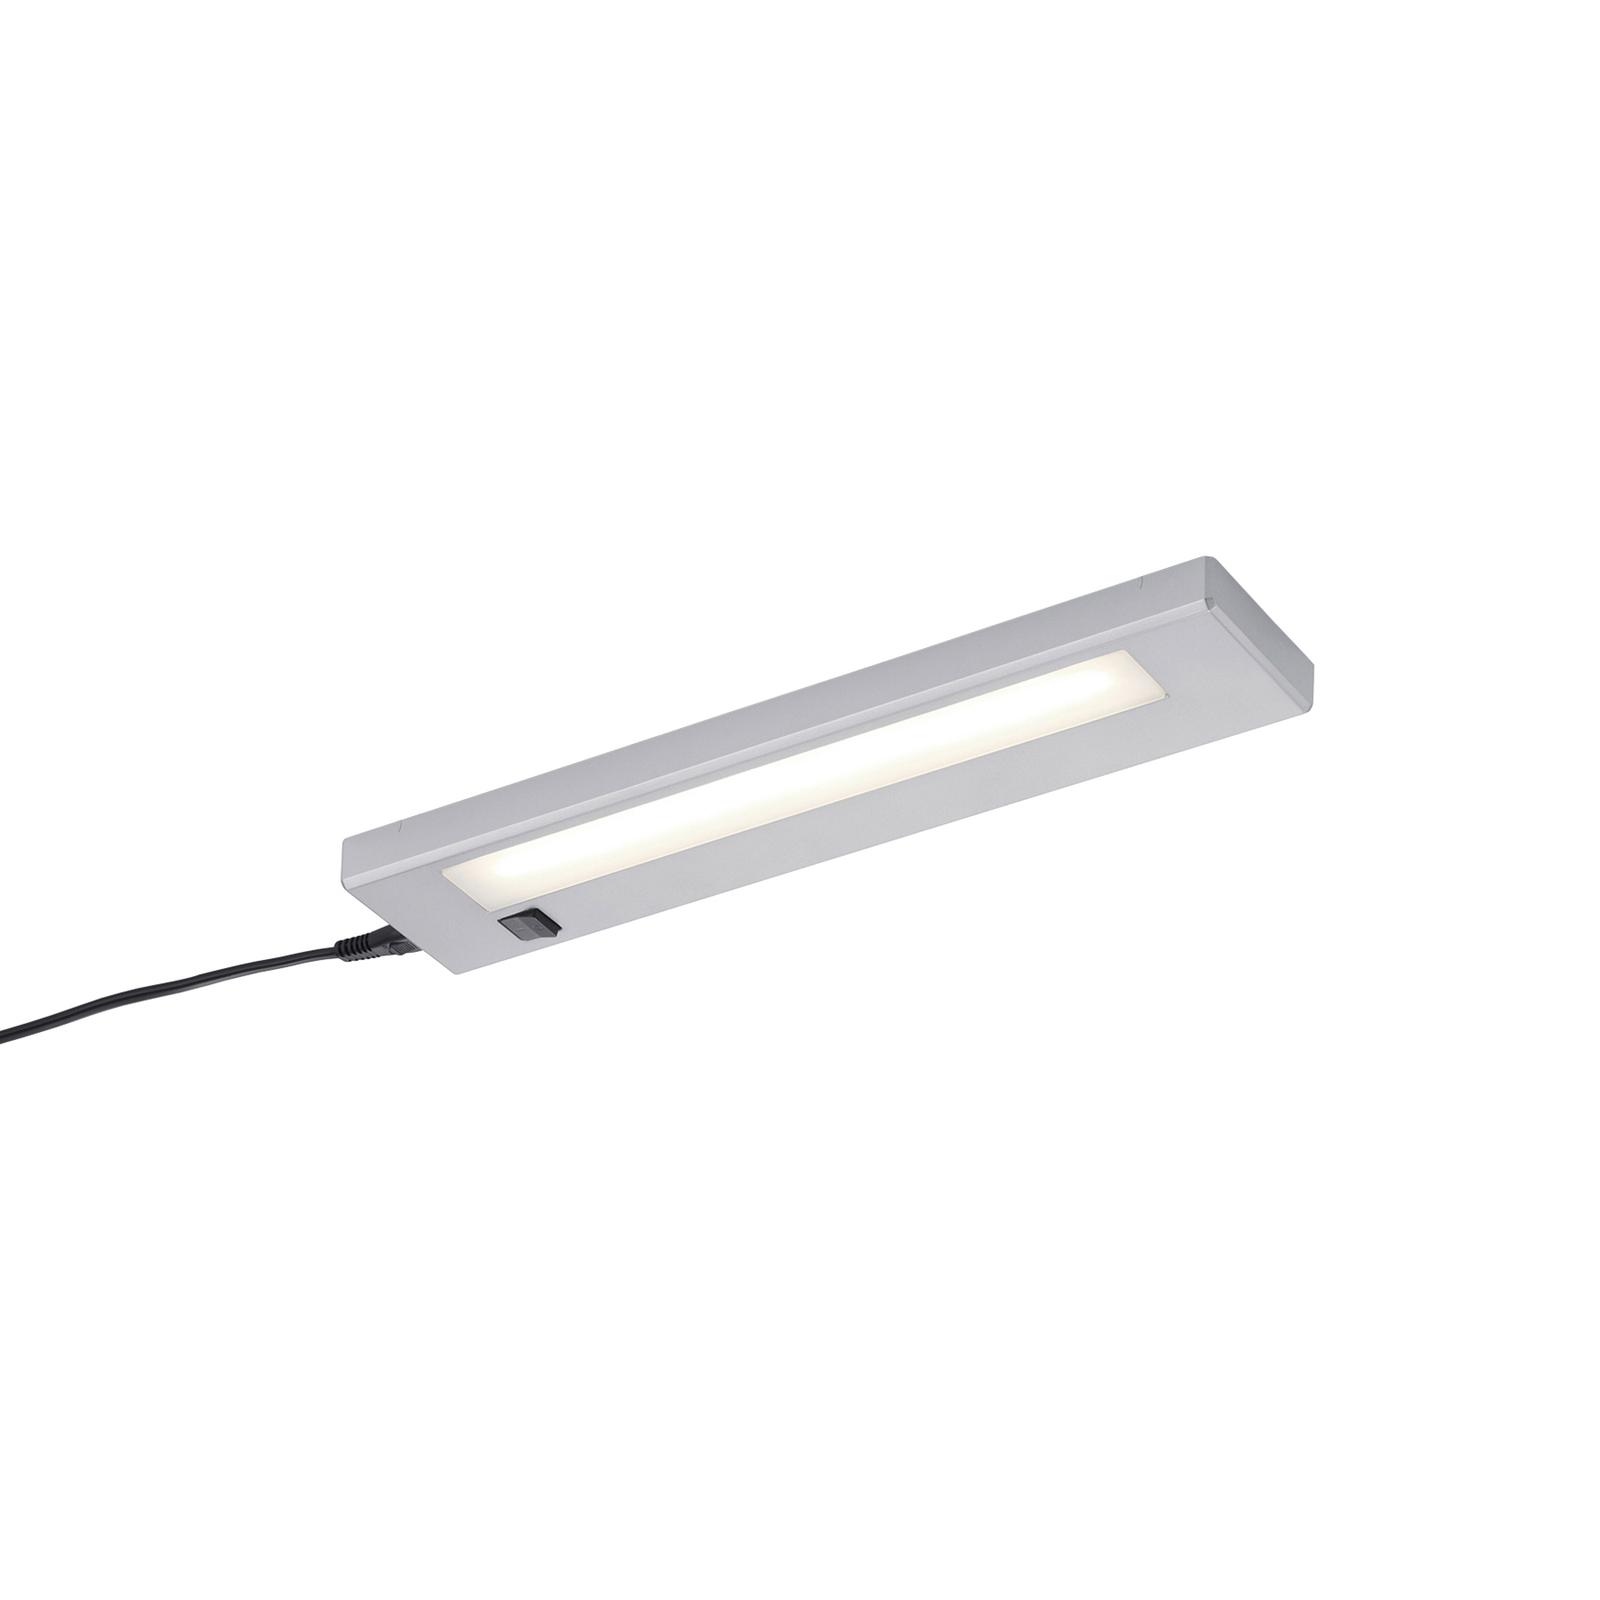 Φωτιστικό LED κάτω από το ντουλάπι Alino, τιτάνιο, μήκος 34 cm